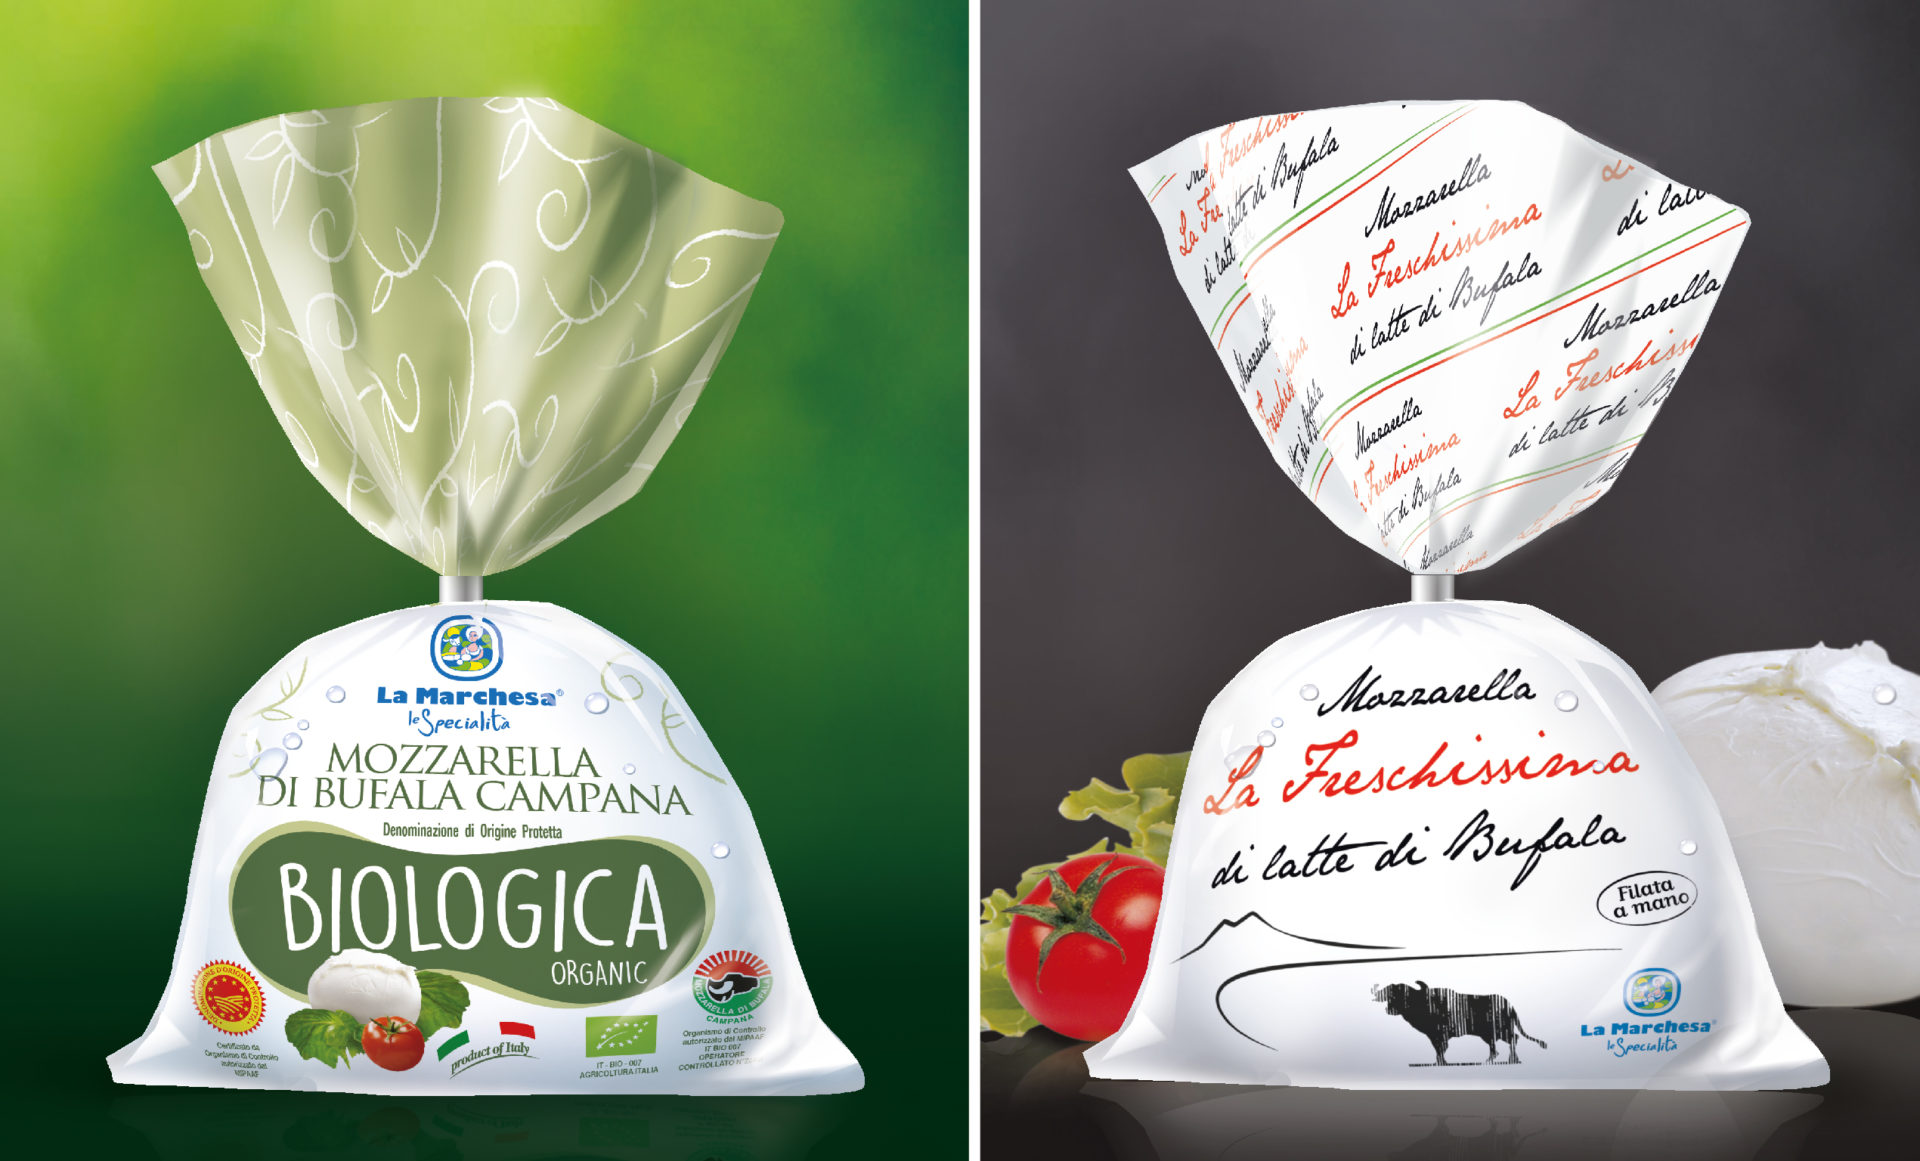 Progettazione packaging Mozzarella di Bufala Campana e Mozzarella La Freschissima Studiovagnetti Perugia